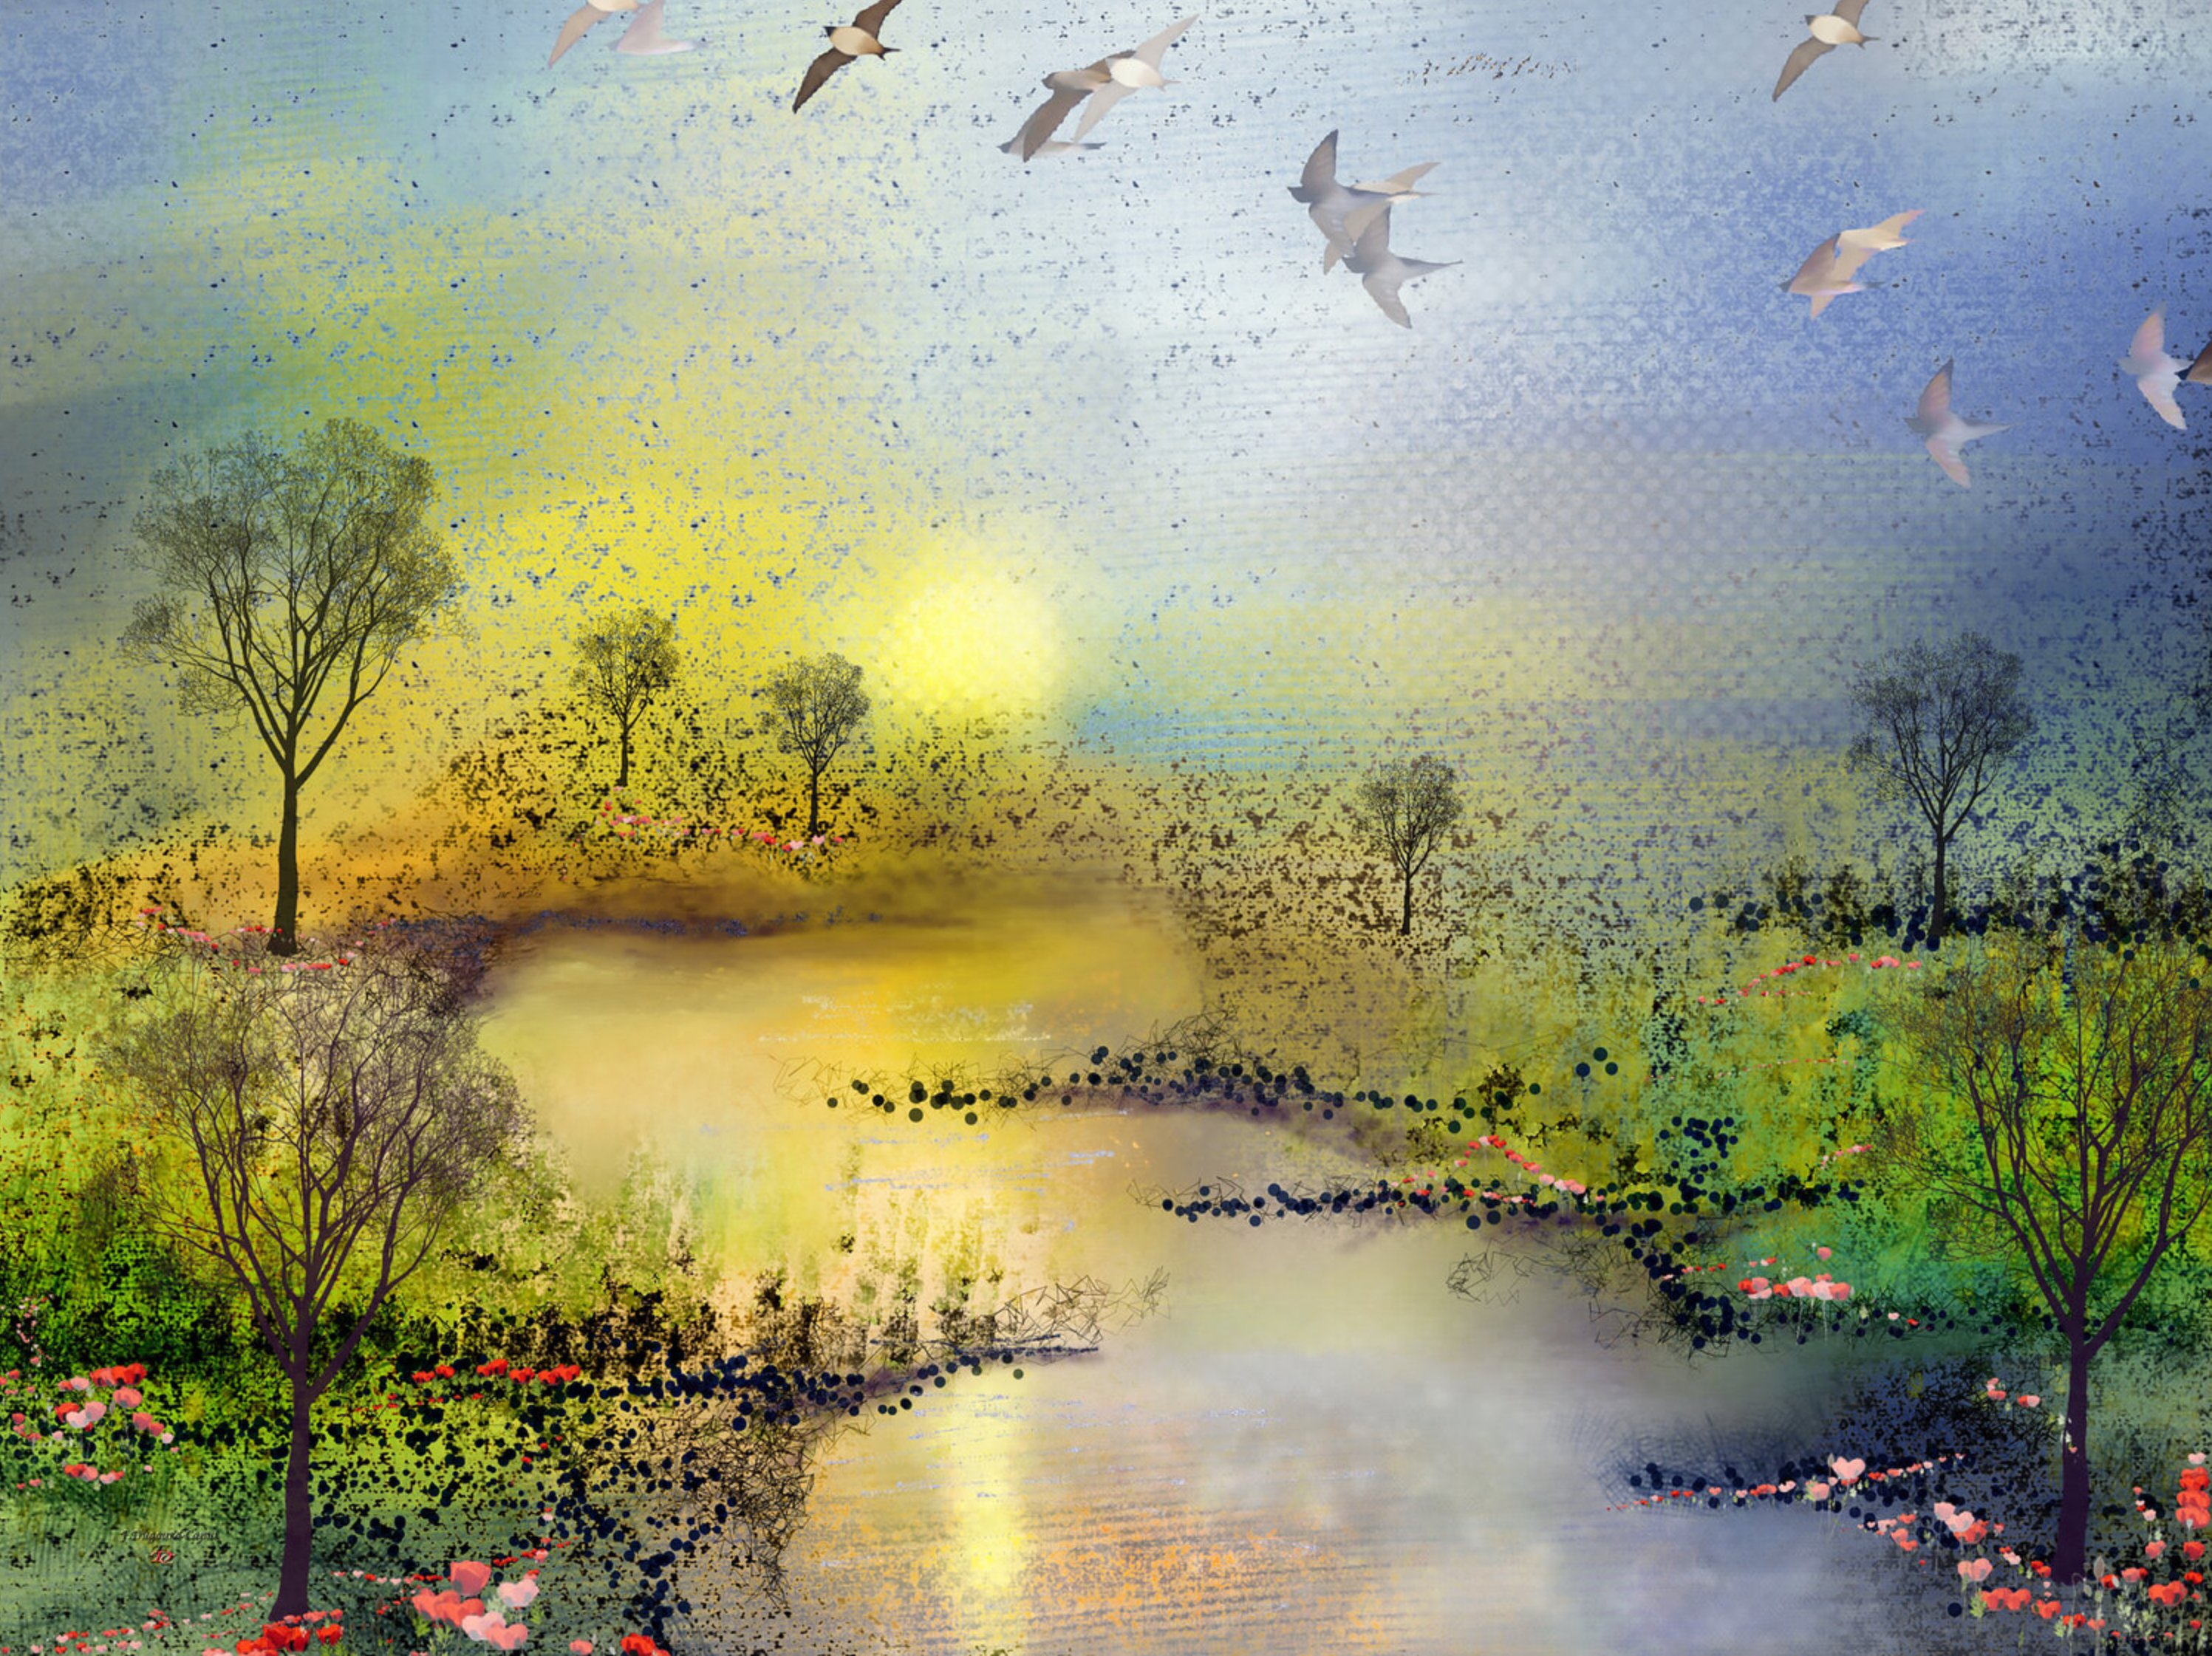 弗朗索瓦丝-杜古德-卡普特的 "Les coquelicots "抽象画描绘了充满甜蜜的想象中的春天的风景，展示了一条河流在两个绿色草地之间蜿蜒，在日落时分两边都有罂粟花。